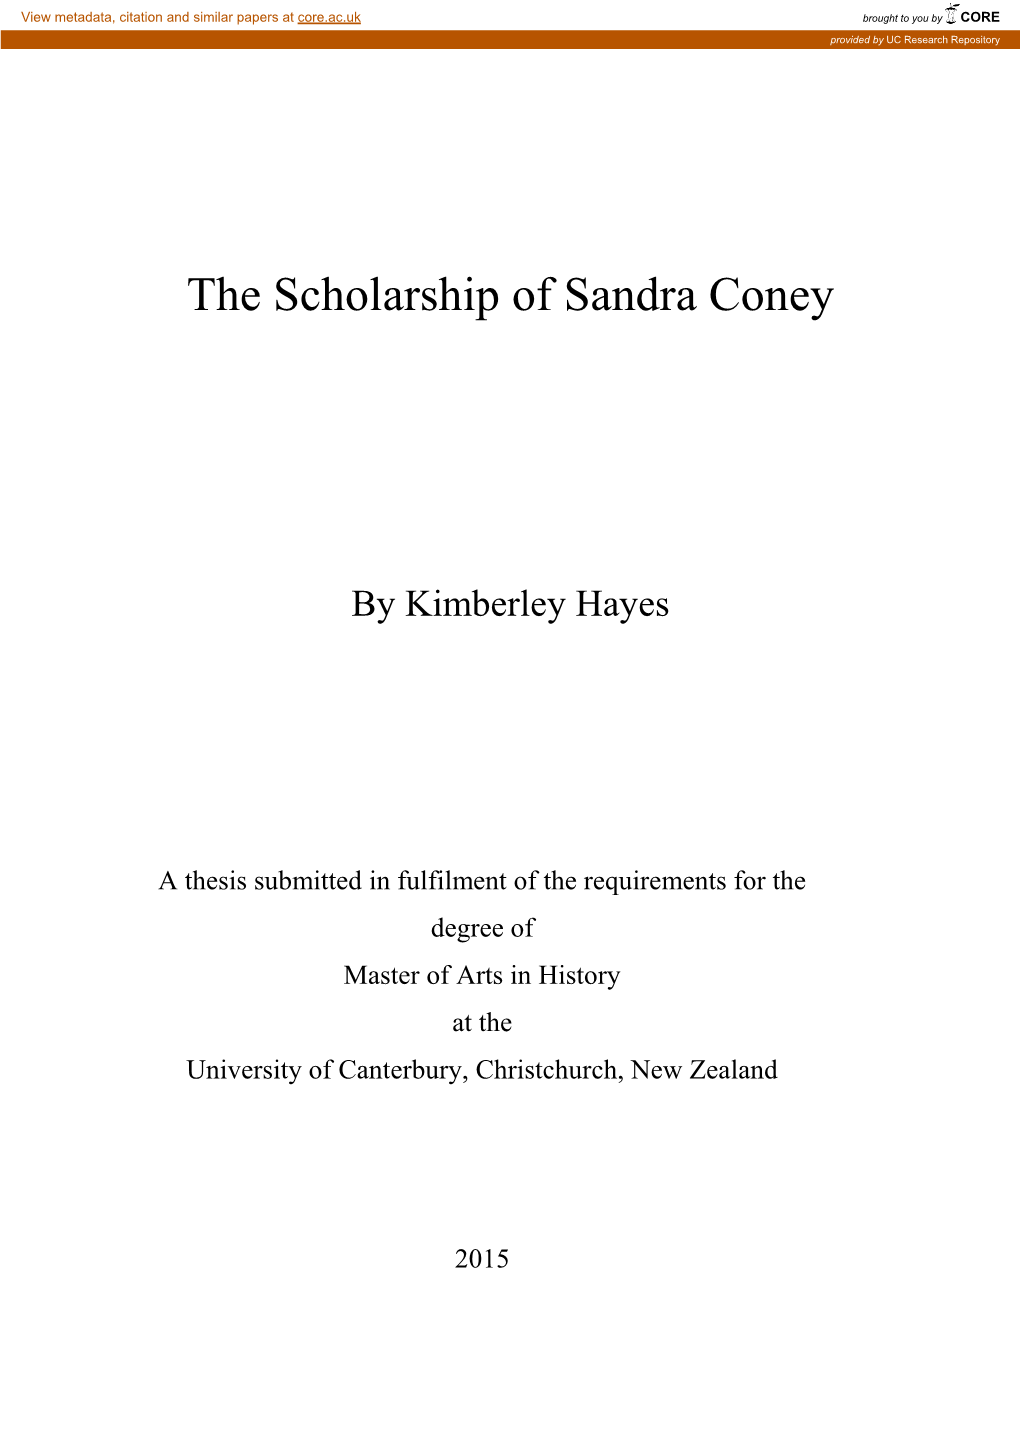 The Scholarship of Sandra Coney